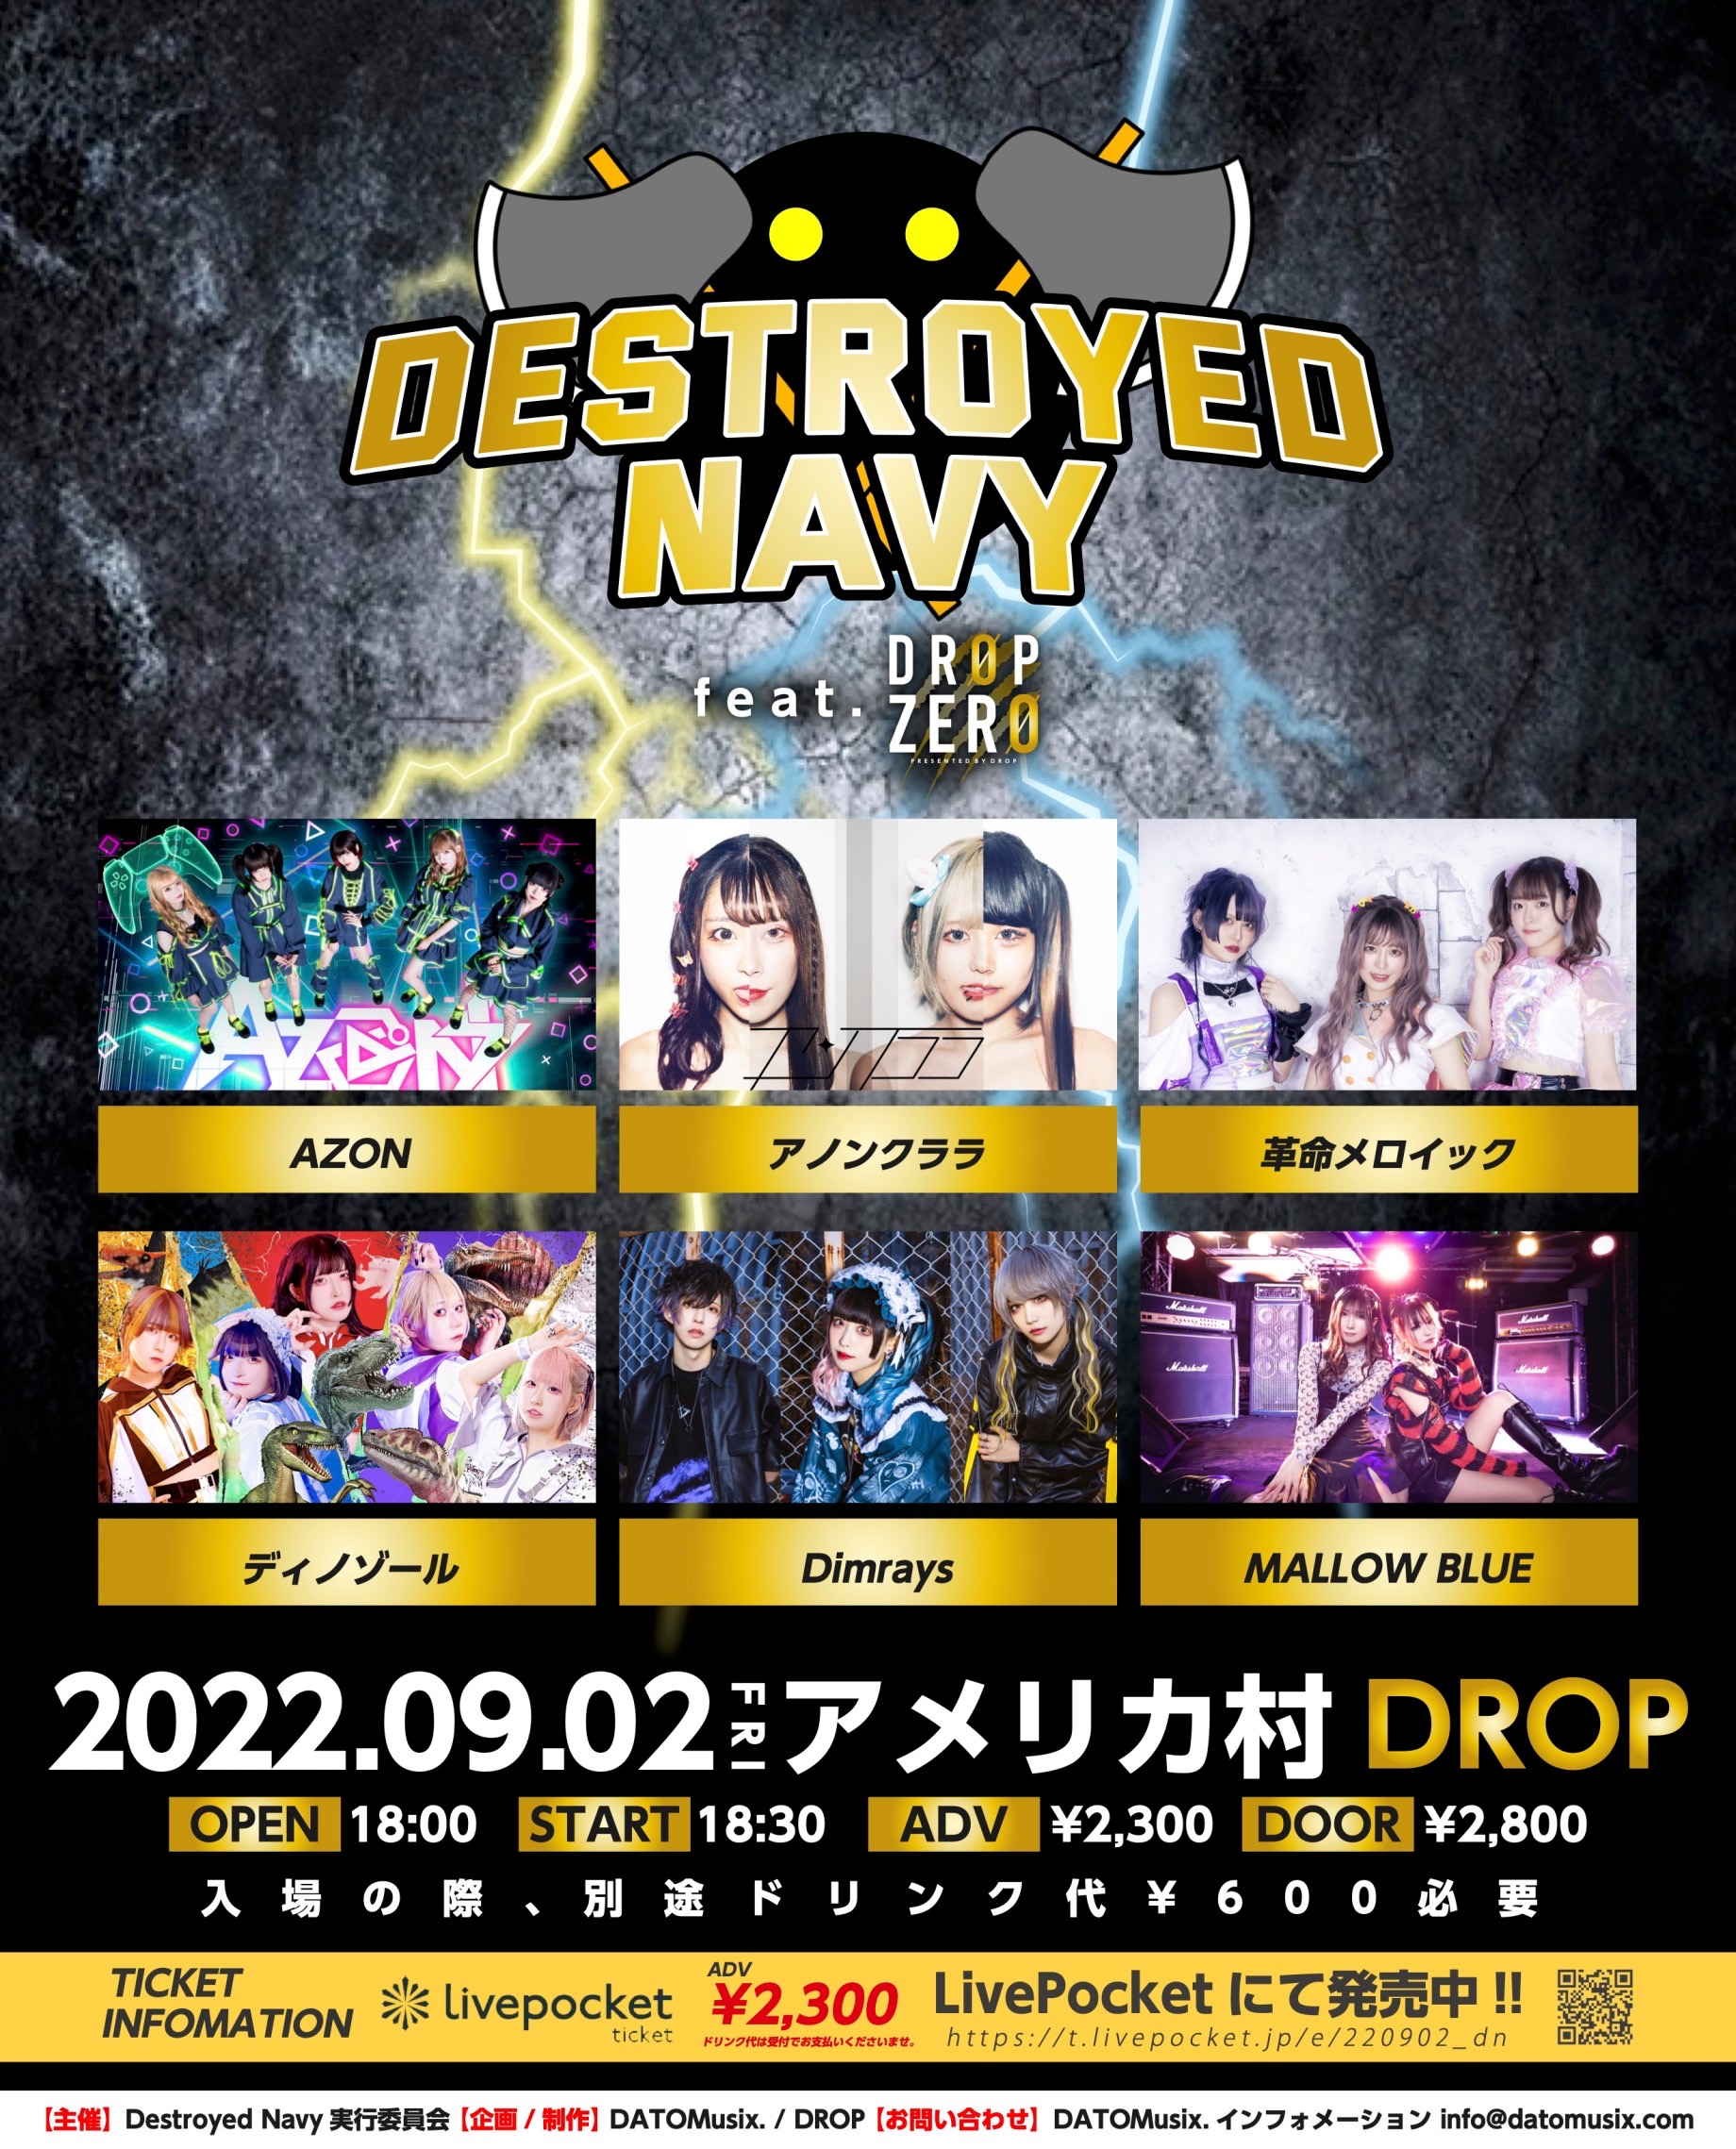 星井あおサポート出演公演 MALLOW BLUE『Destroyed navy feat. DROP ZERO』